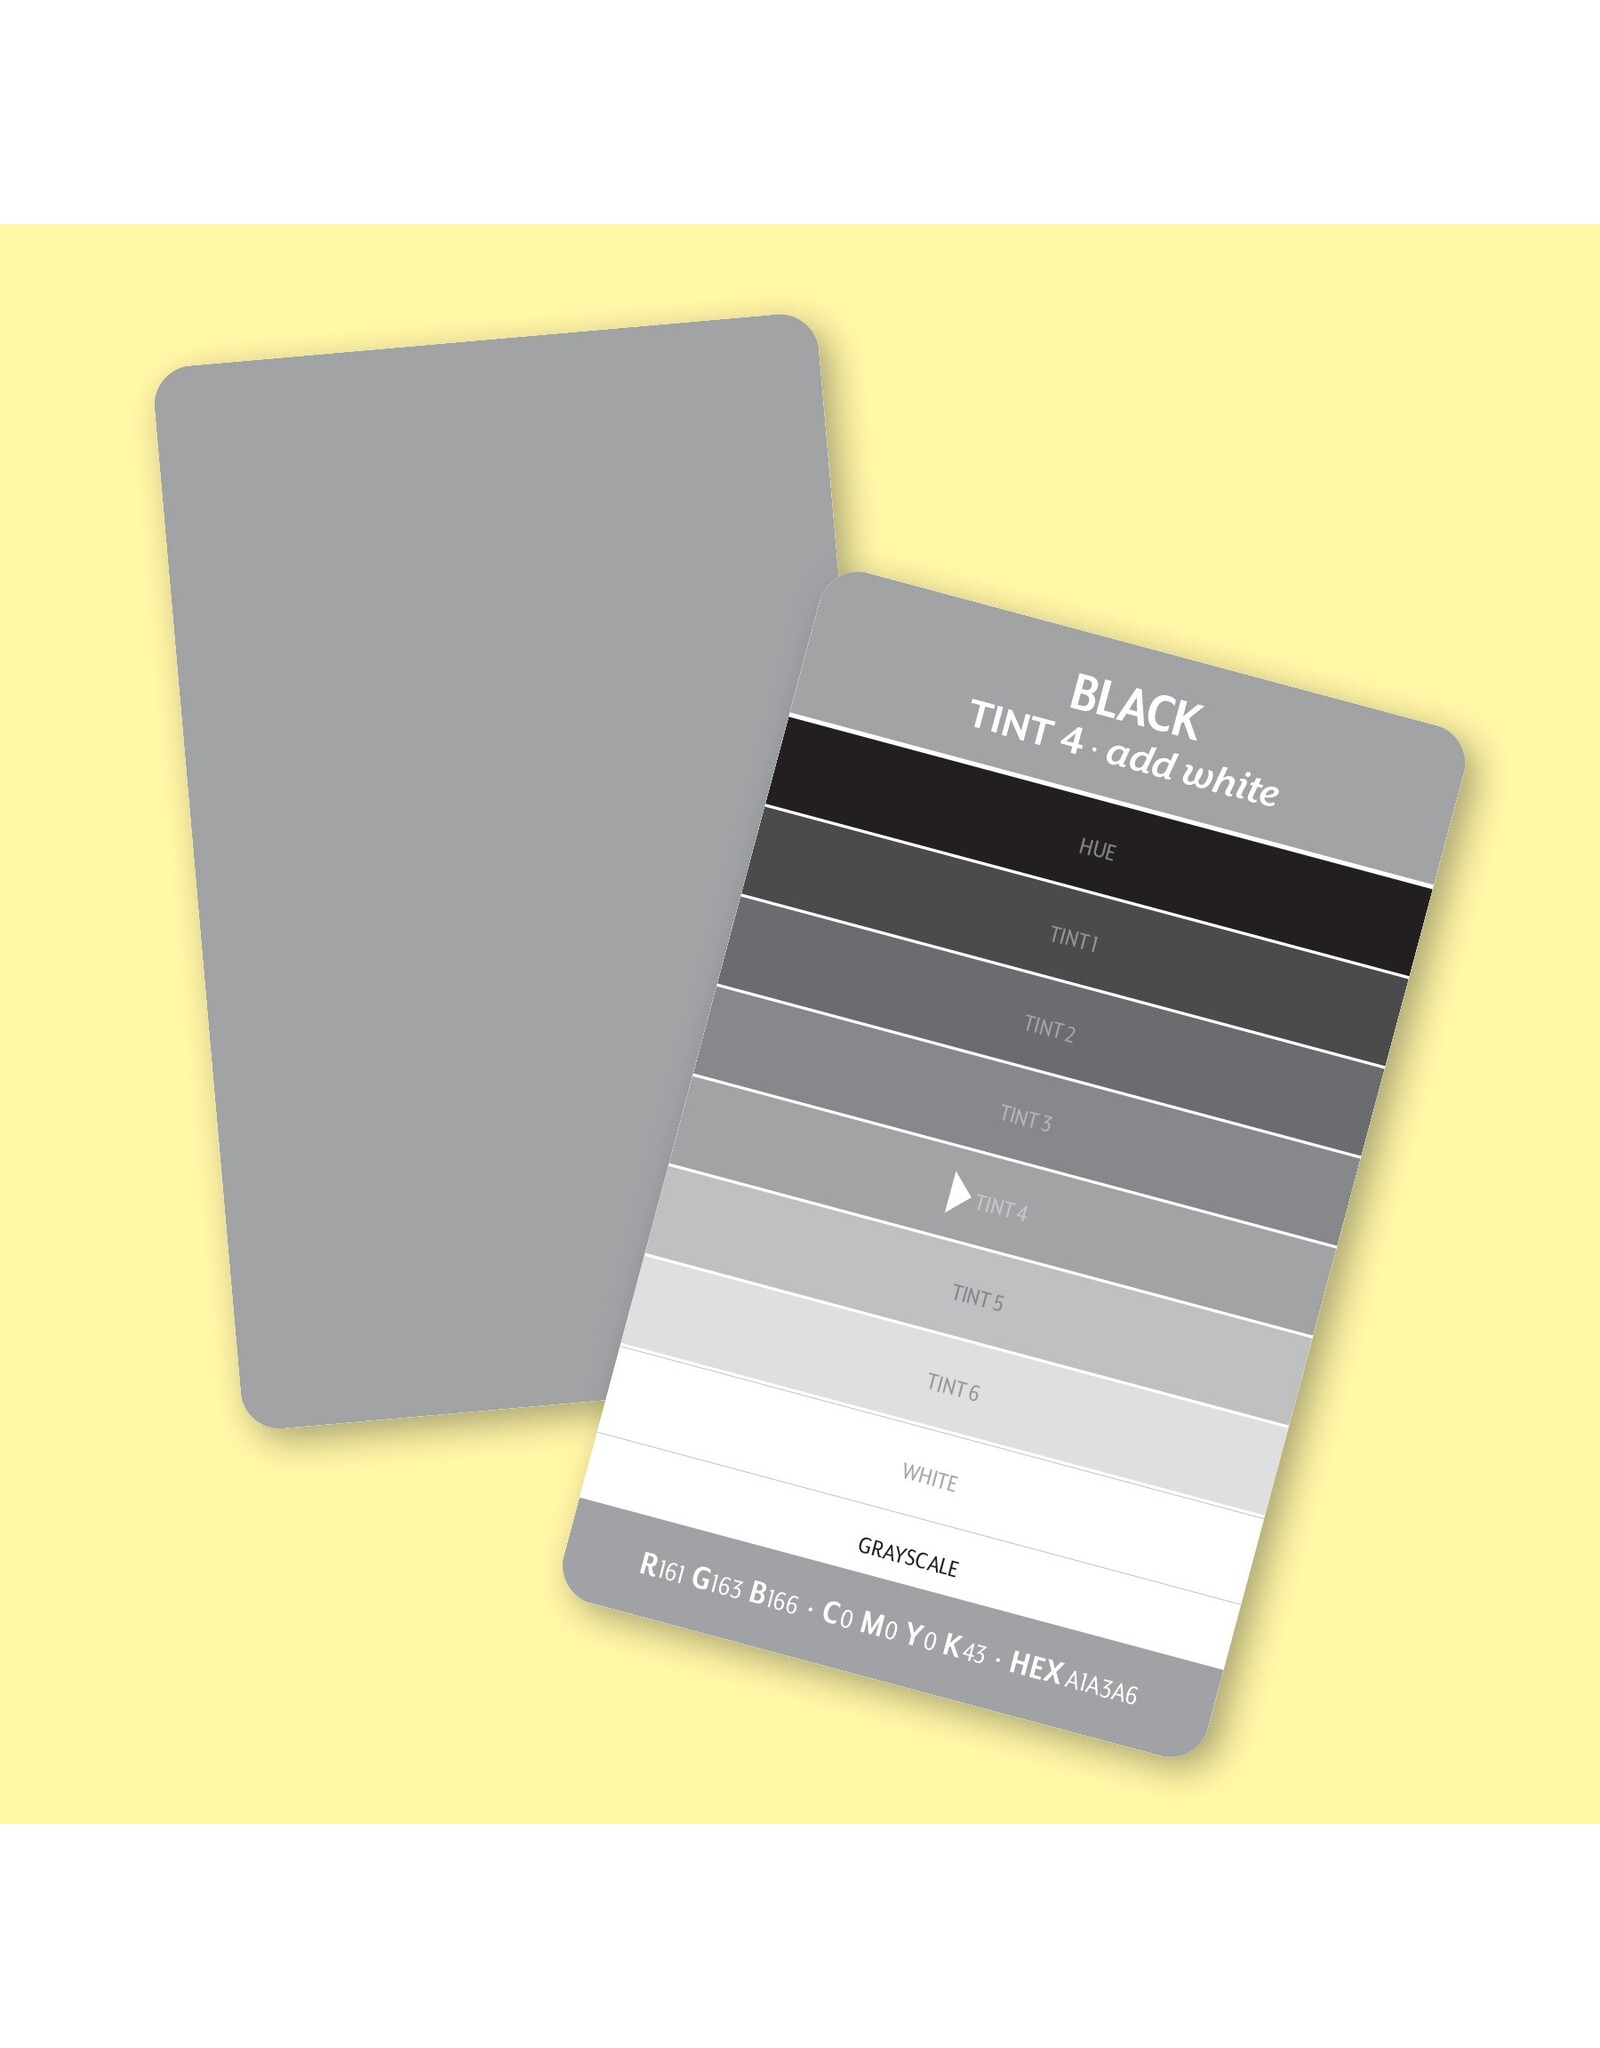 CT Publishing Joen Wolfrom - Essential Color Card Deck - set met 200 kleurkaarten